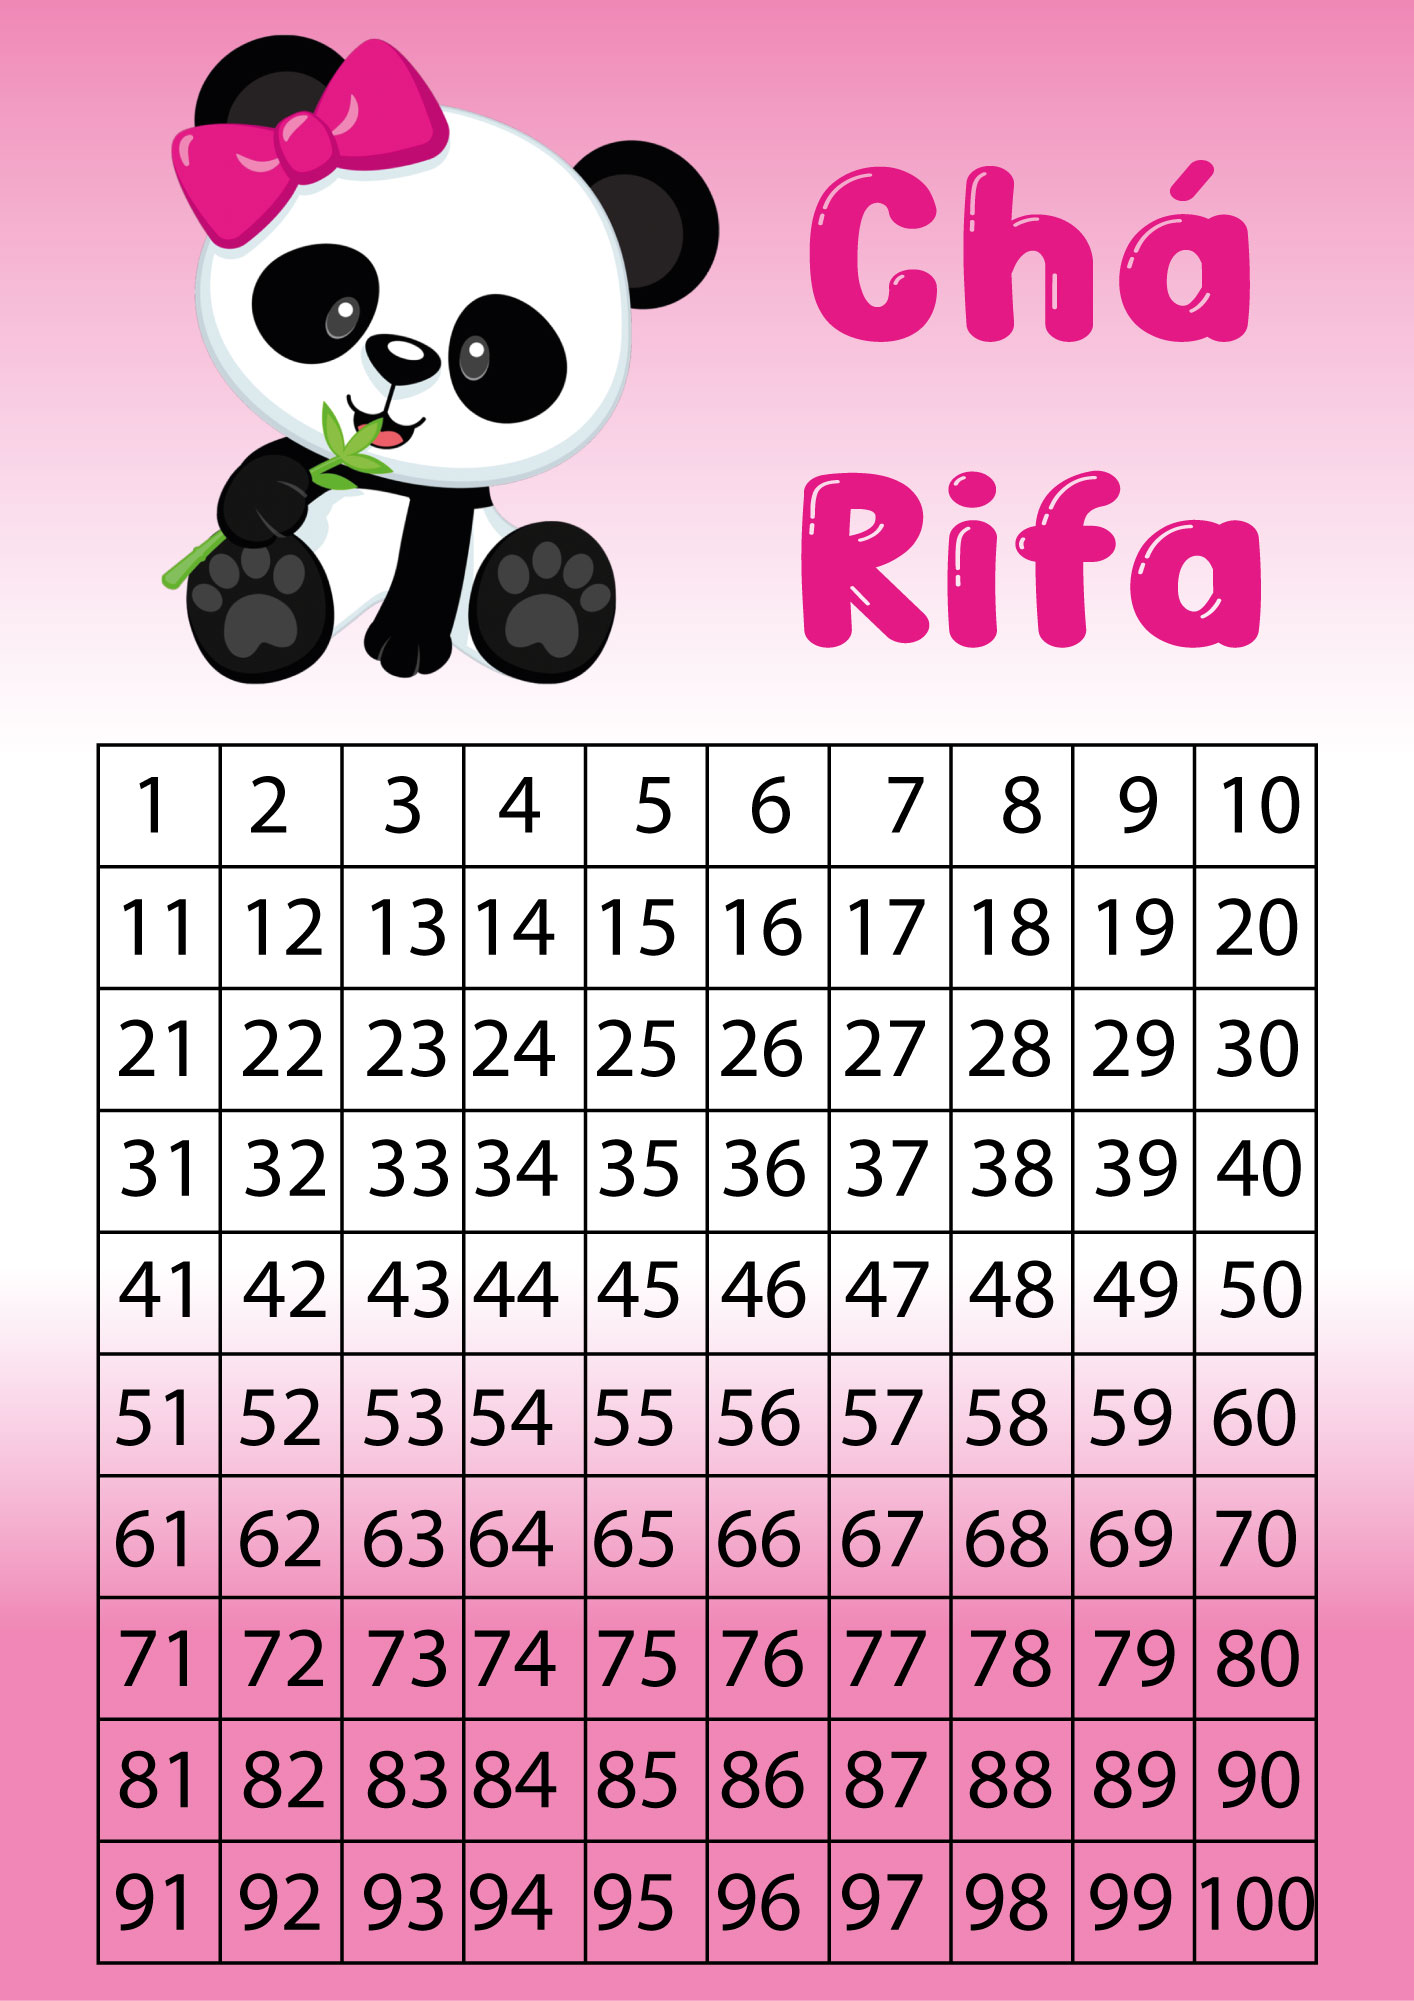 Cartel Rifa 100 Numeros Cartela chá rifa Panda